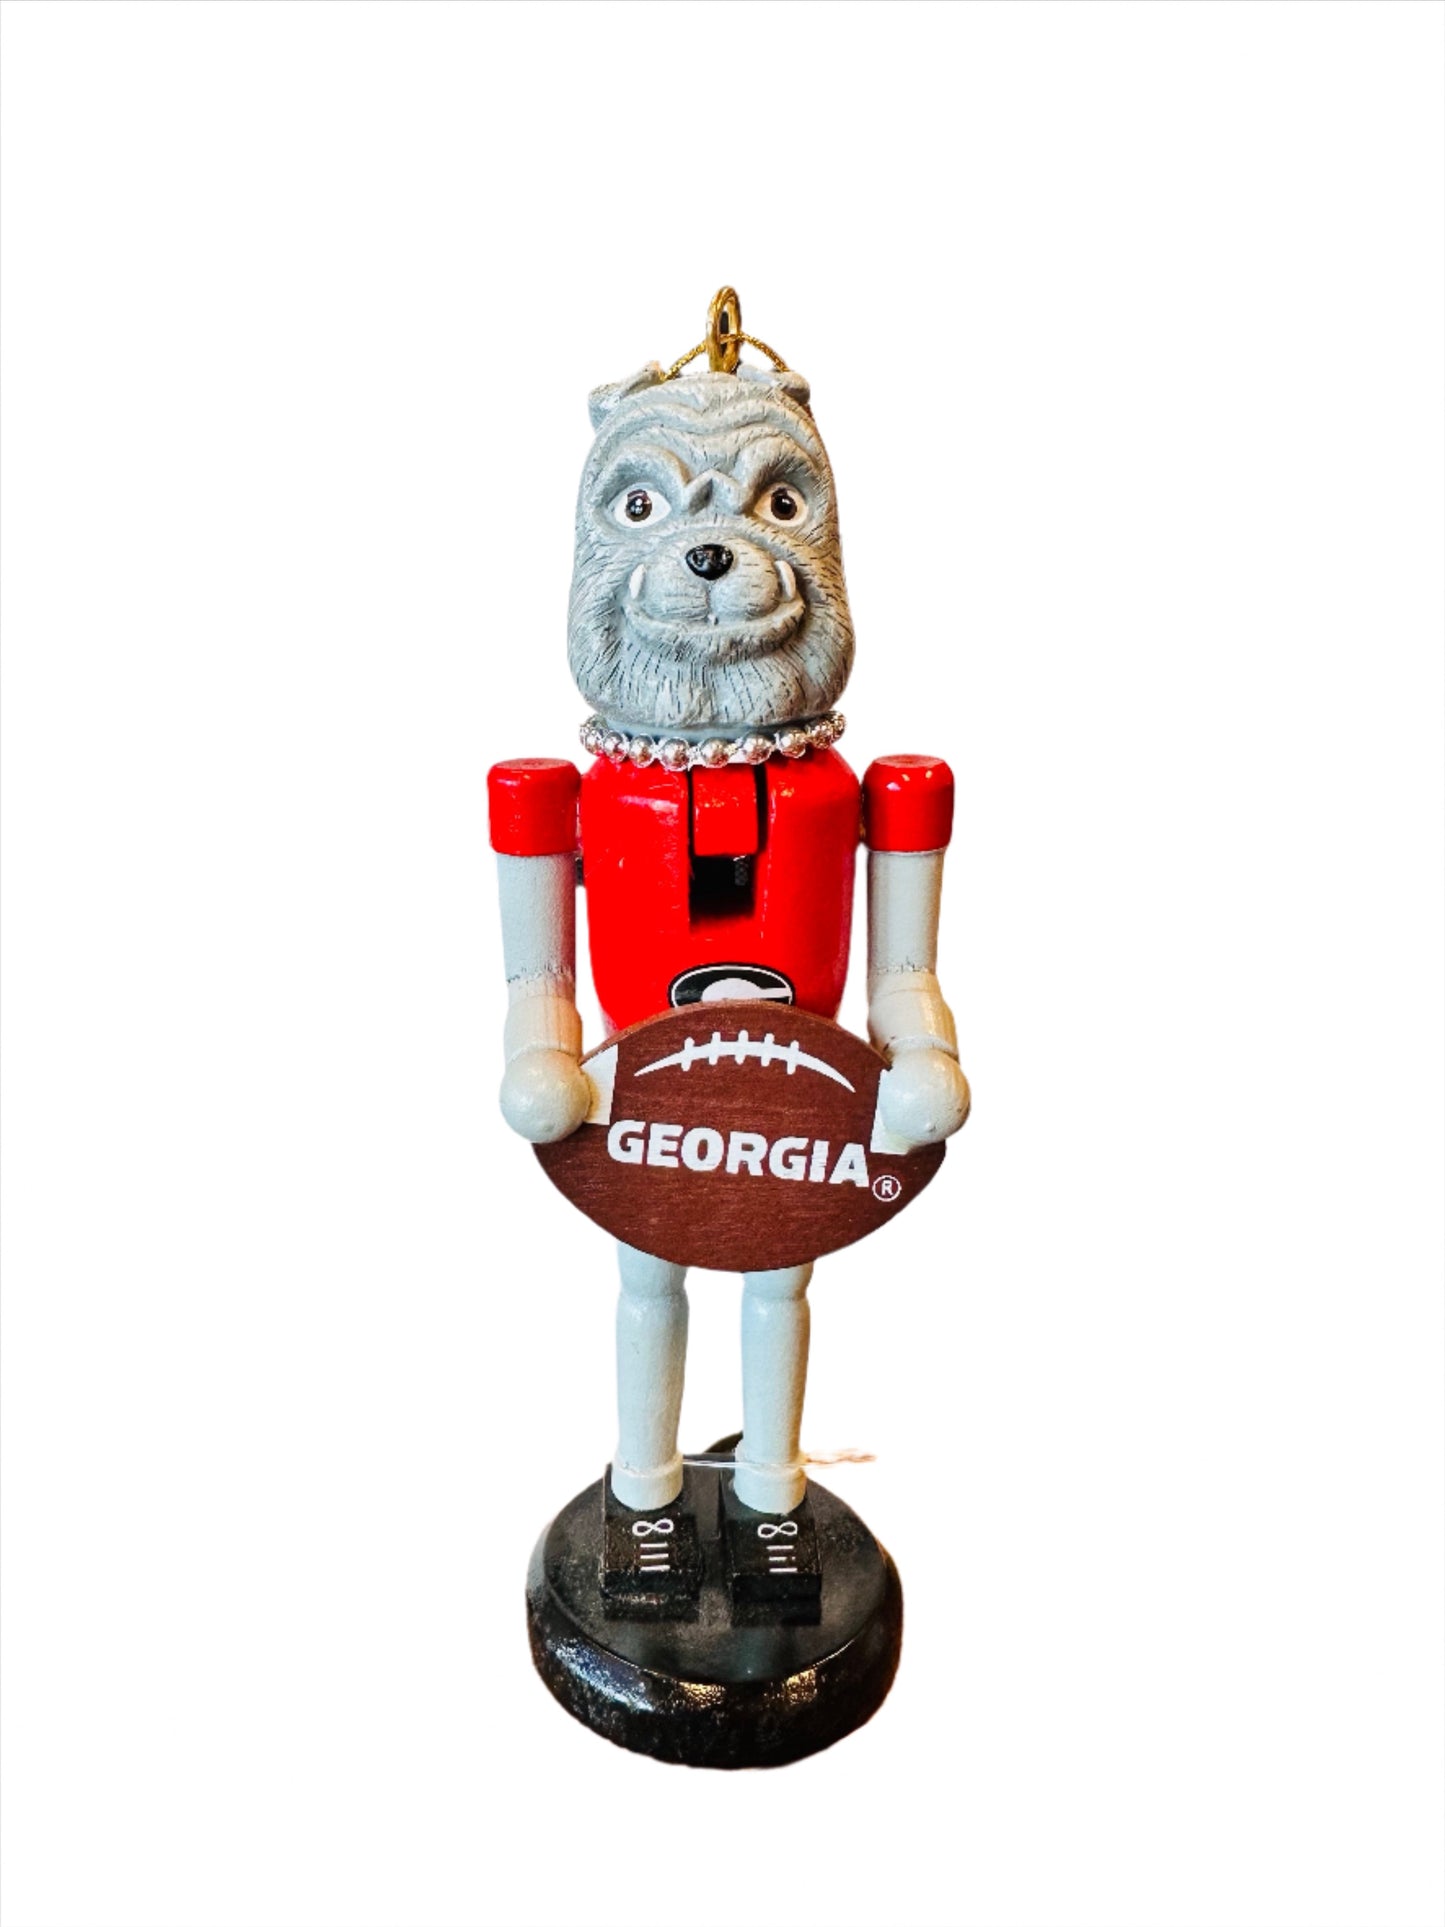 UGA Ornament Mascots